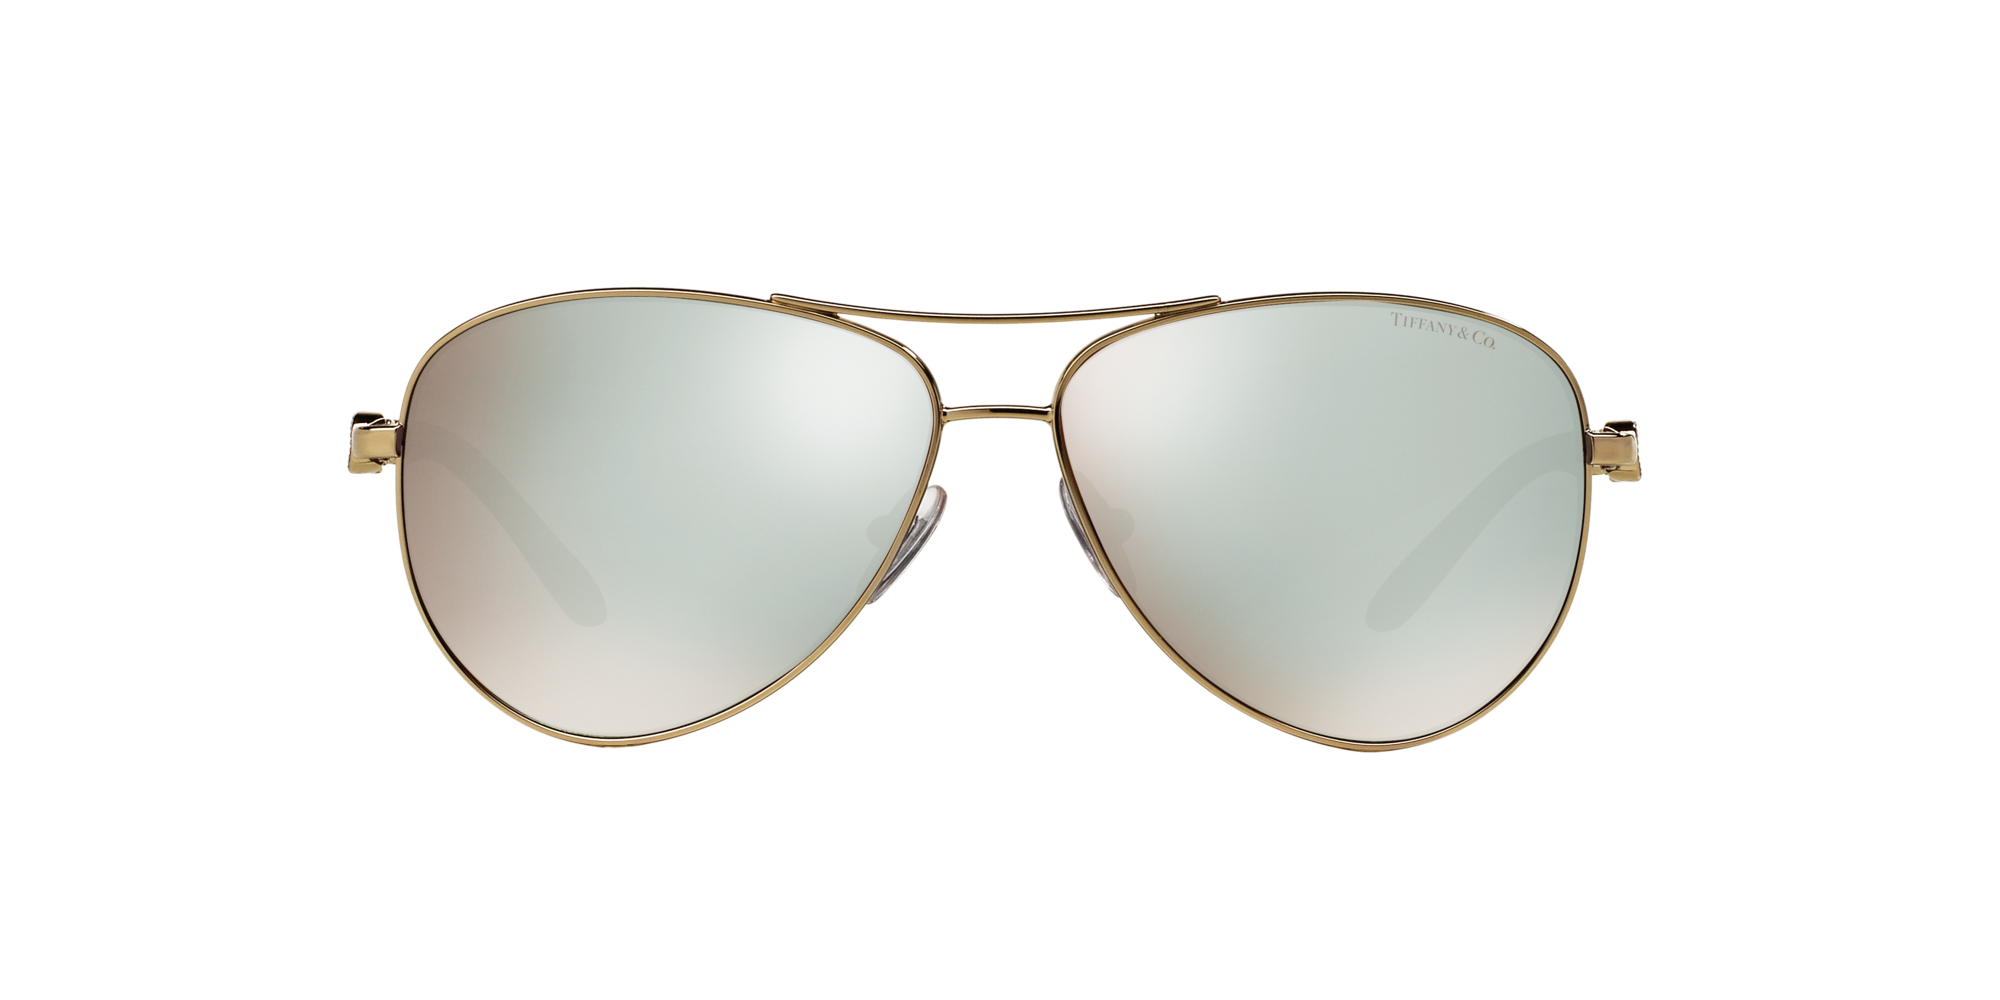 tiffany 3049b sunglasses